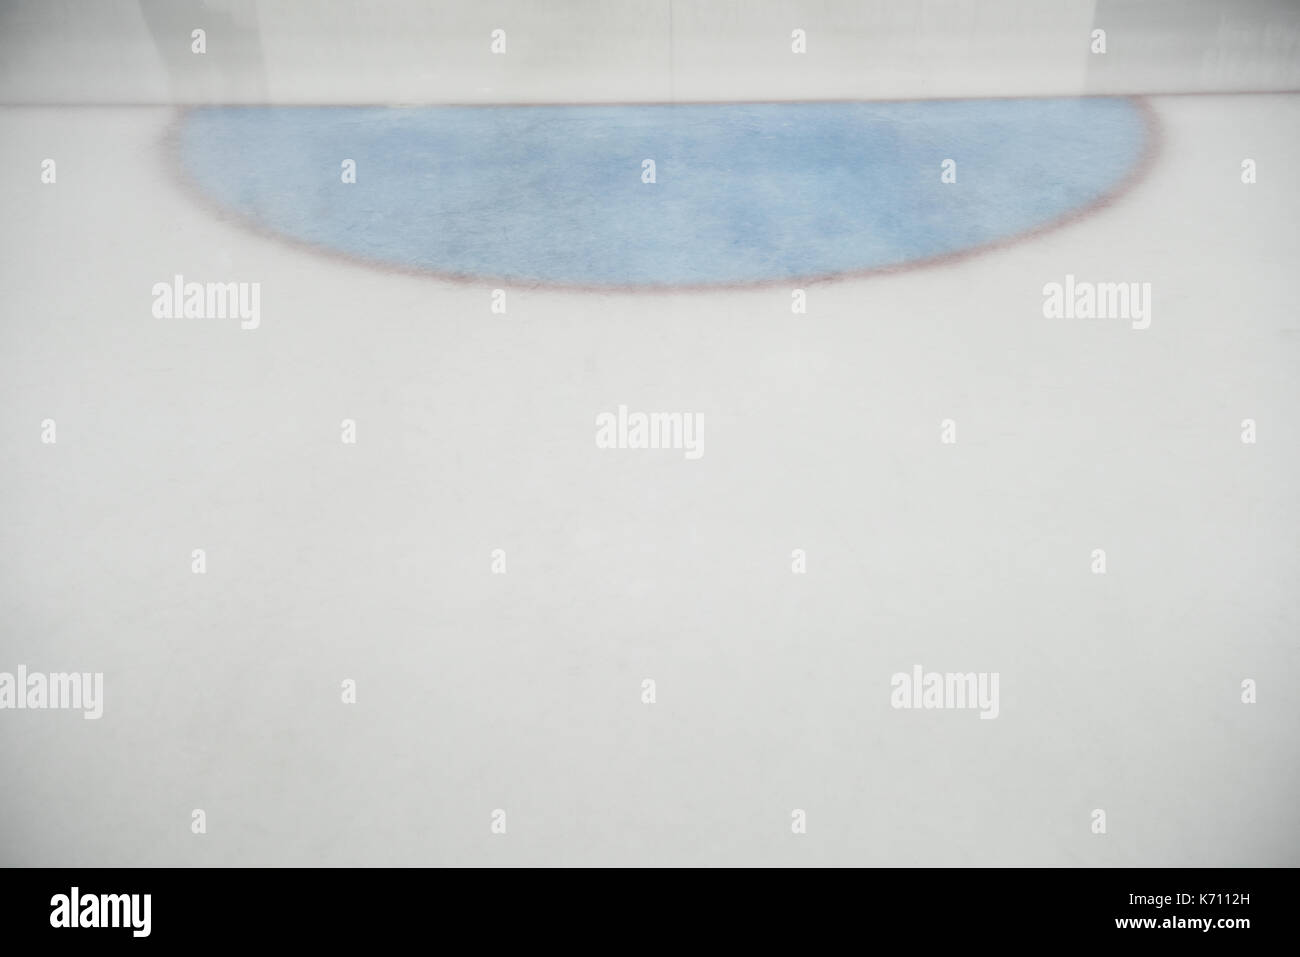 Ziel linie an Ice Hockey Rink Stockfoto